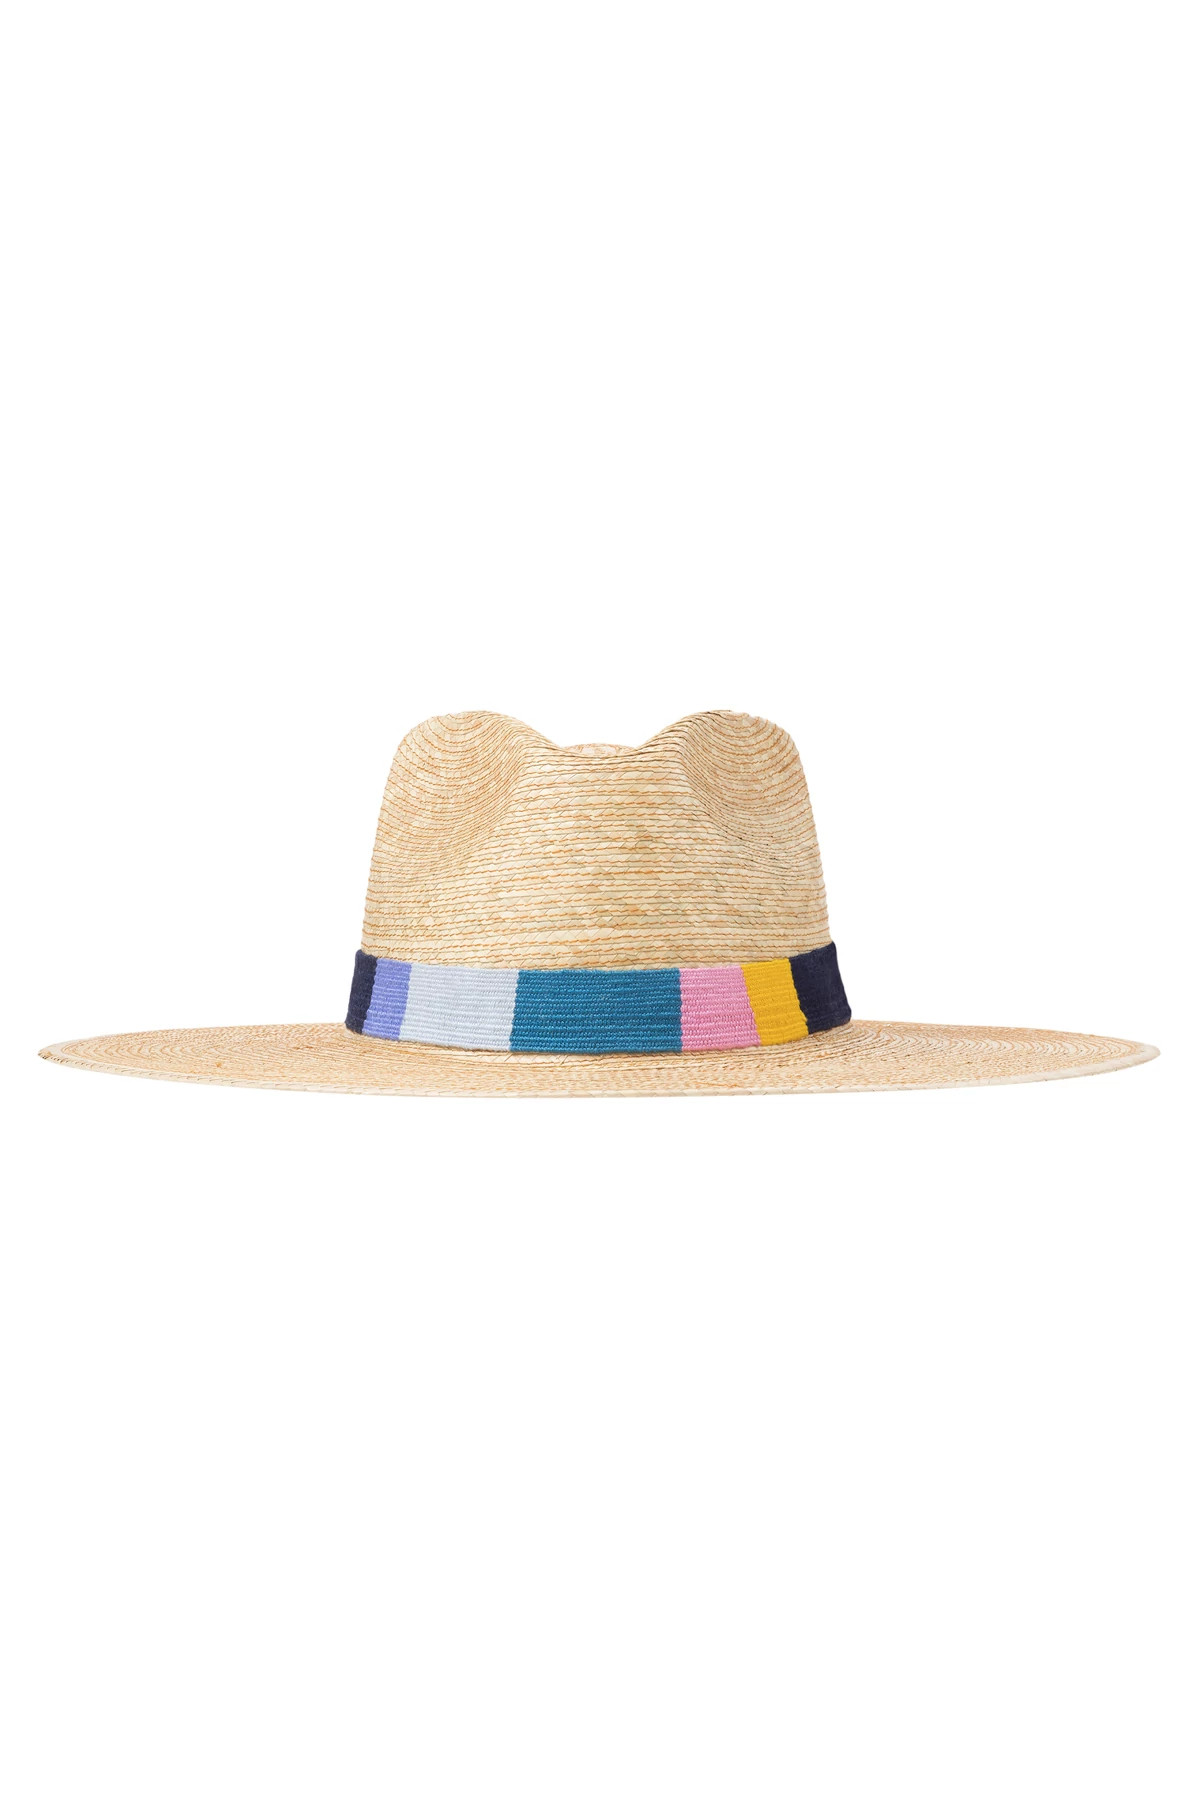 MULTI Ofelia Palm Panama Hat image number 1